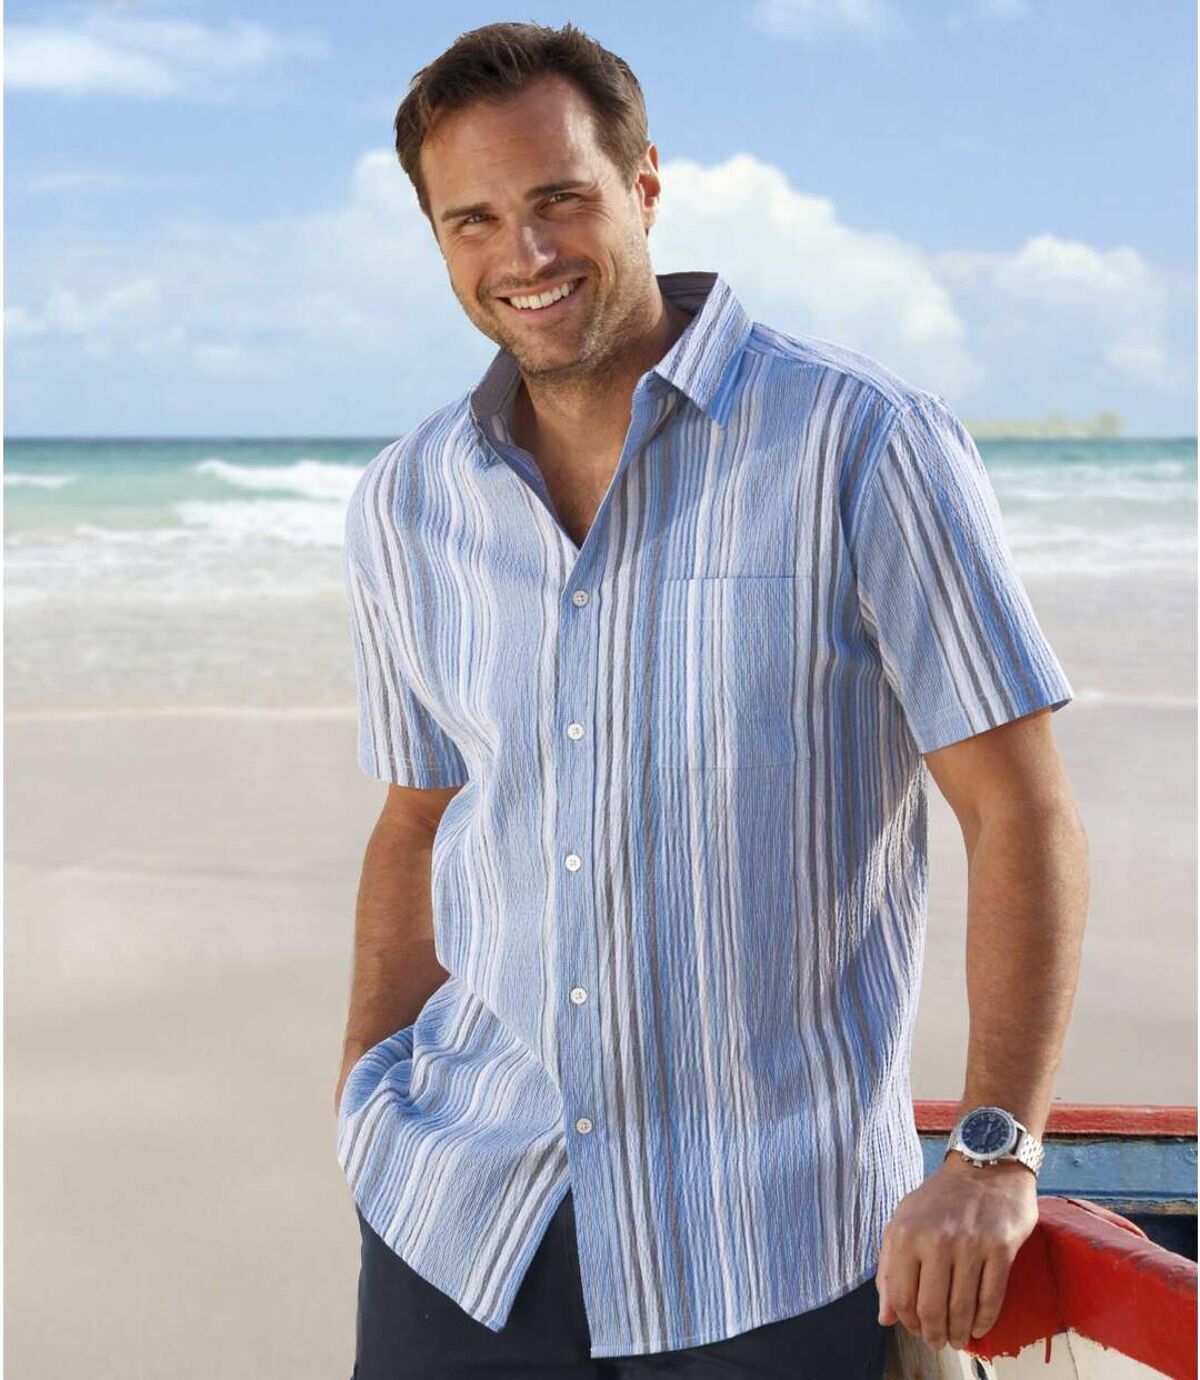 Men's Blue Striped Crepe Shirt - Short Sleeves Atlas For Men